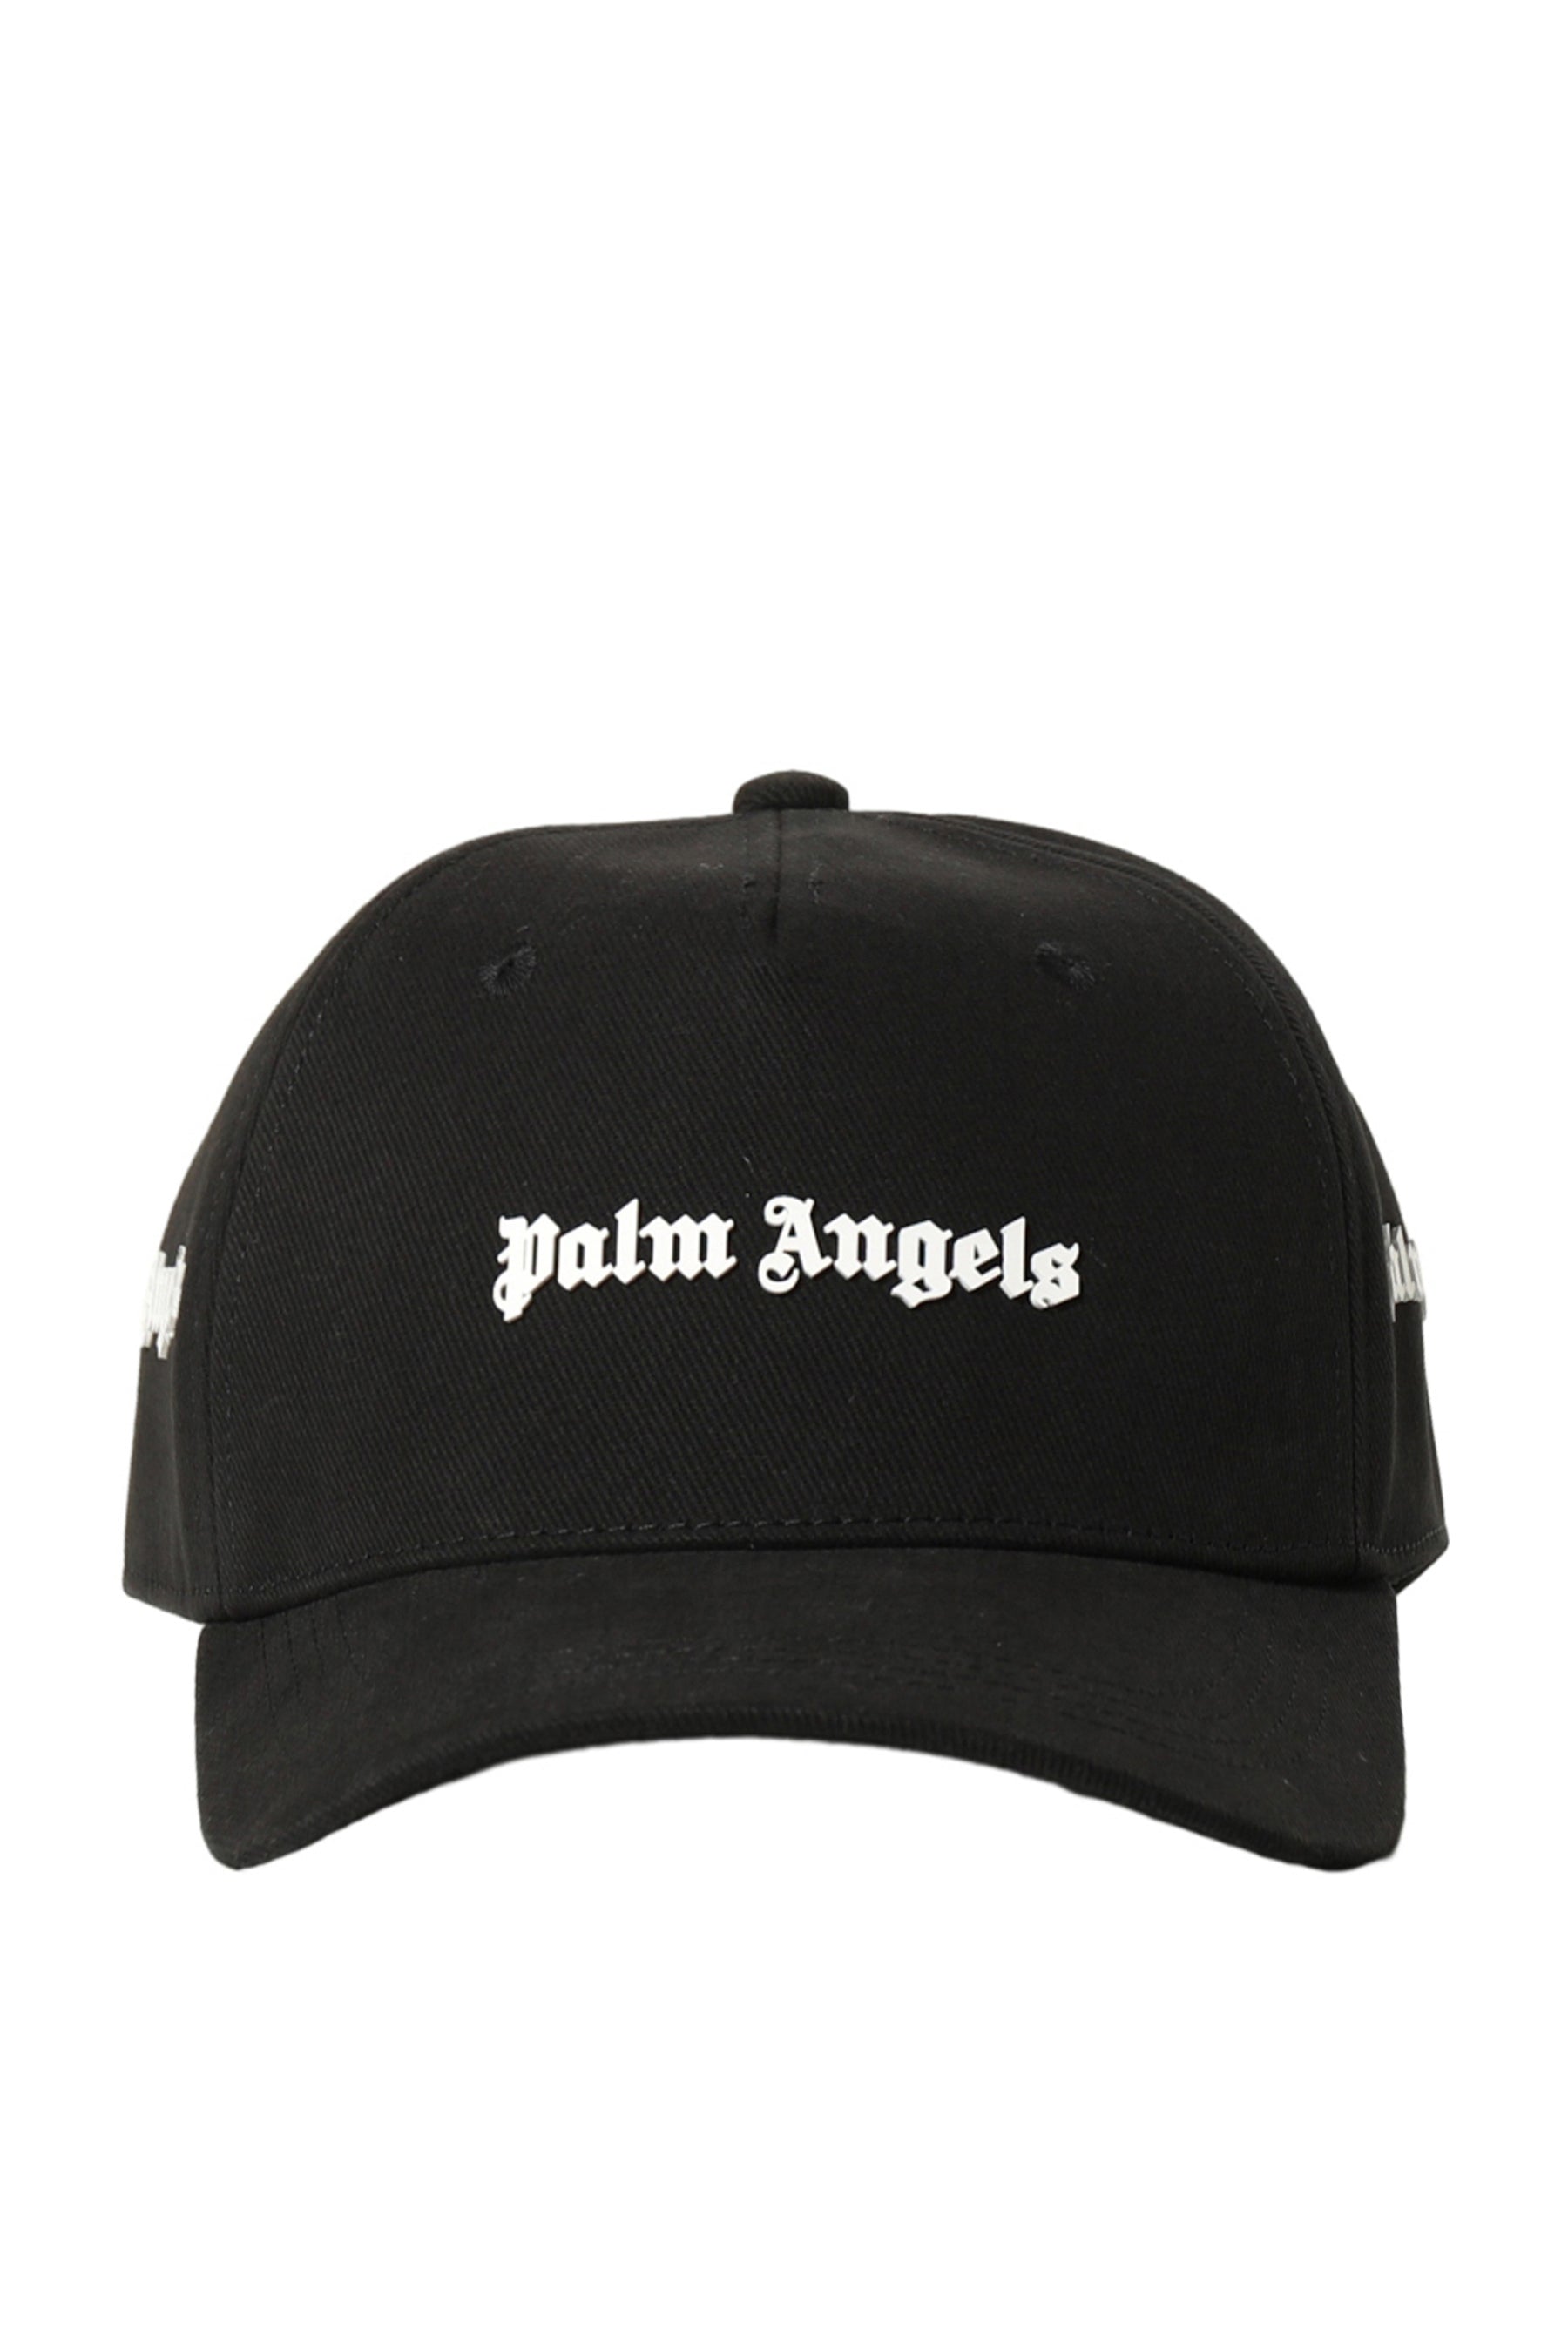 Palm Angels パームエンジェルス FW23 PALM ANGELS LOGO CAP / BLK WHT